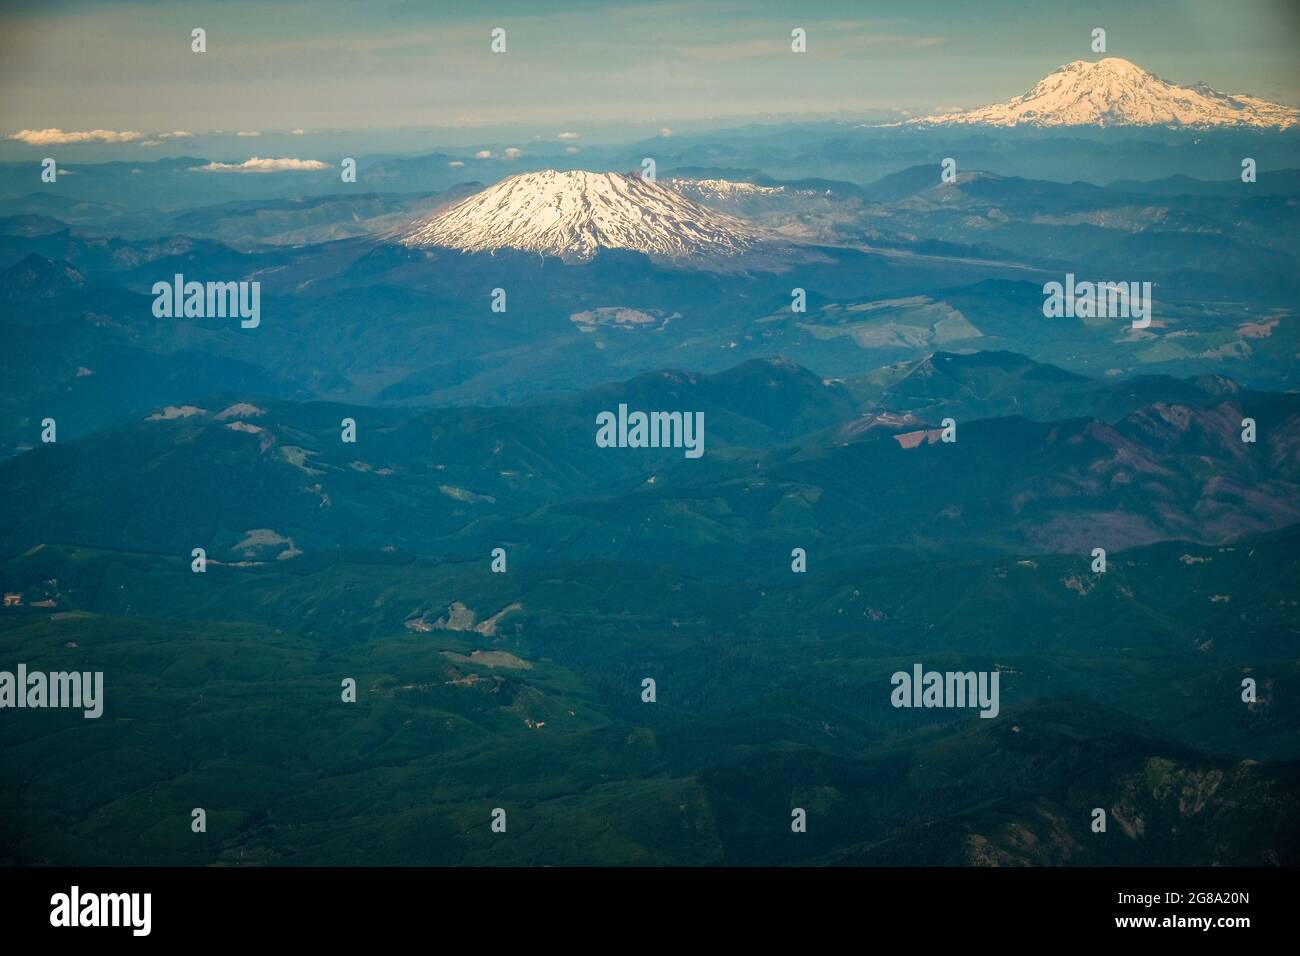 Vista aerea del Monte St. Helens e Mt. Rainier nelle Cascade Mountains dello stato di Washington, Stati Uniti. Foto Stock